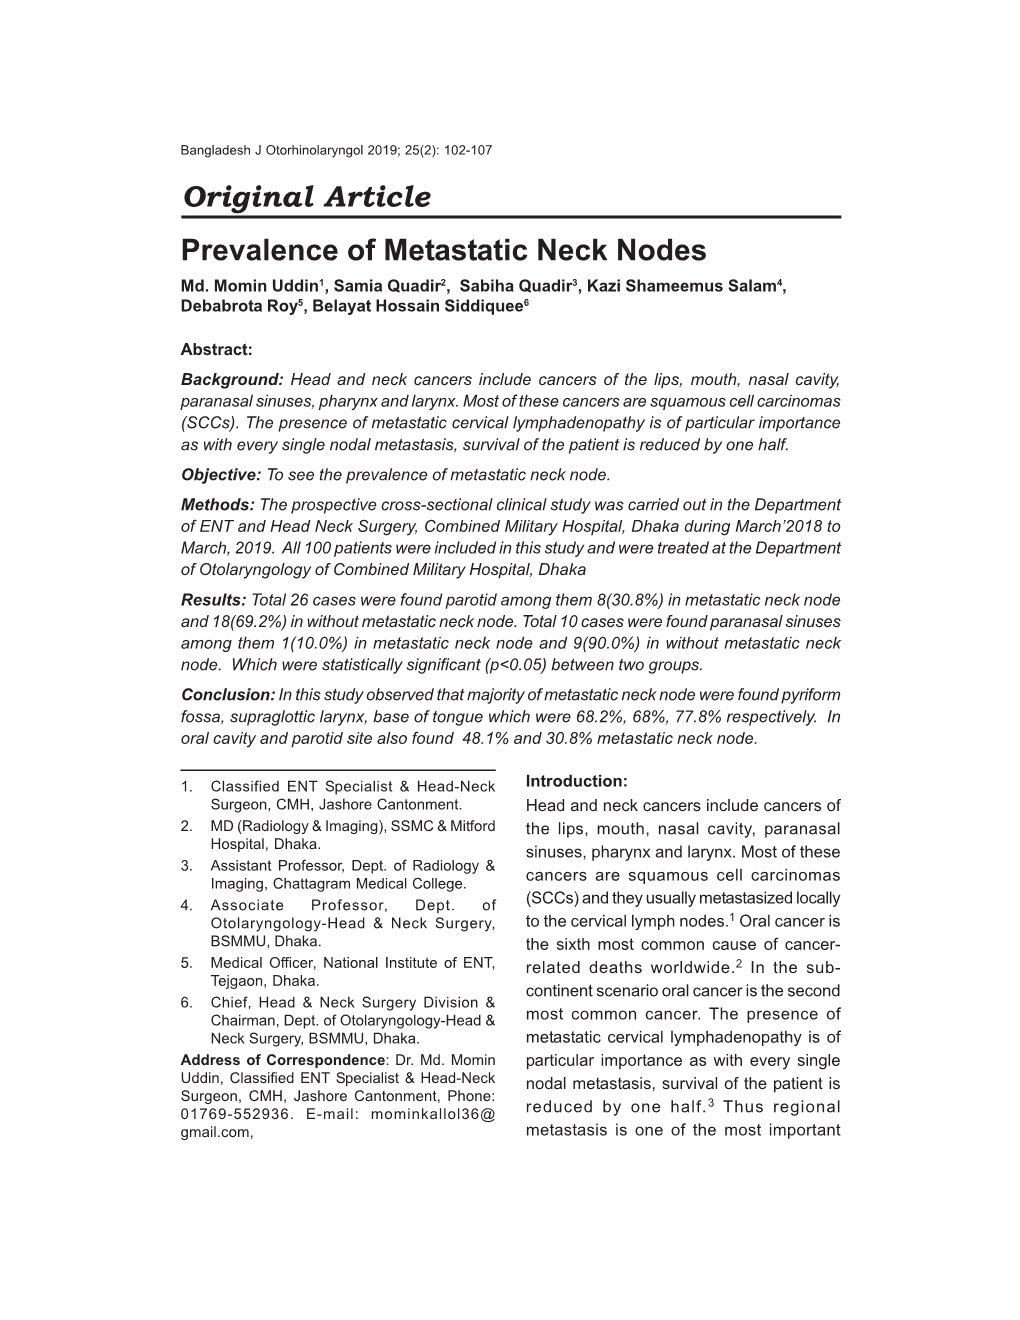 Original Article Prevalence of Metastatic Neck Nodes Md